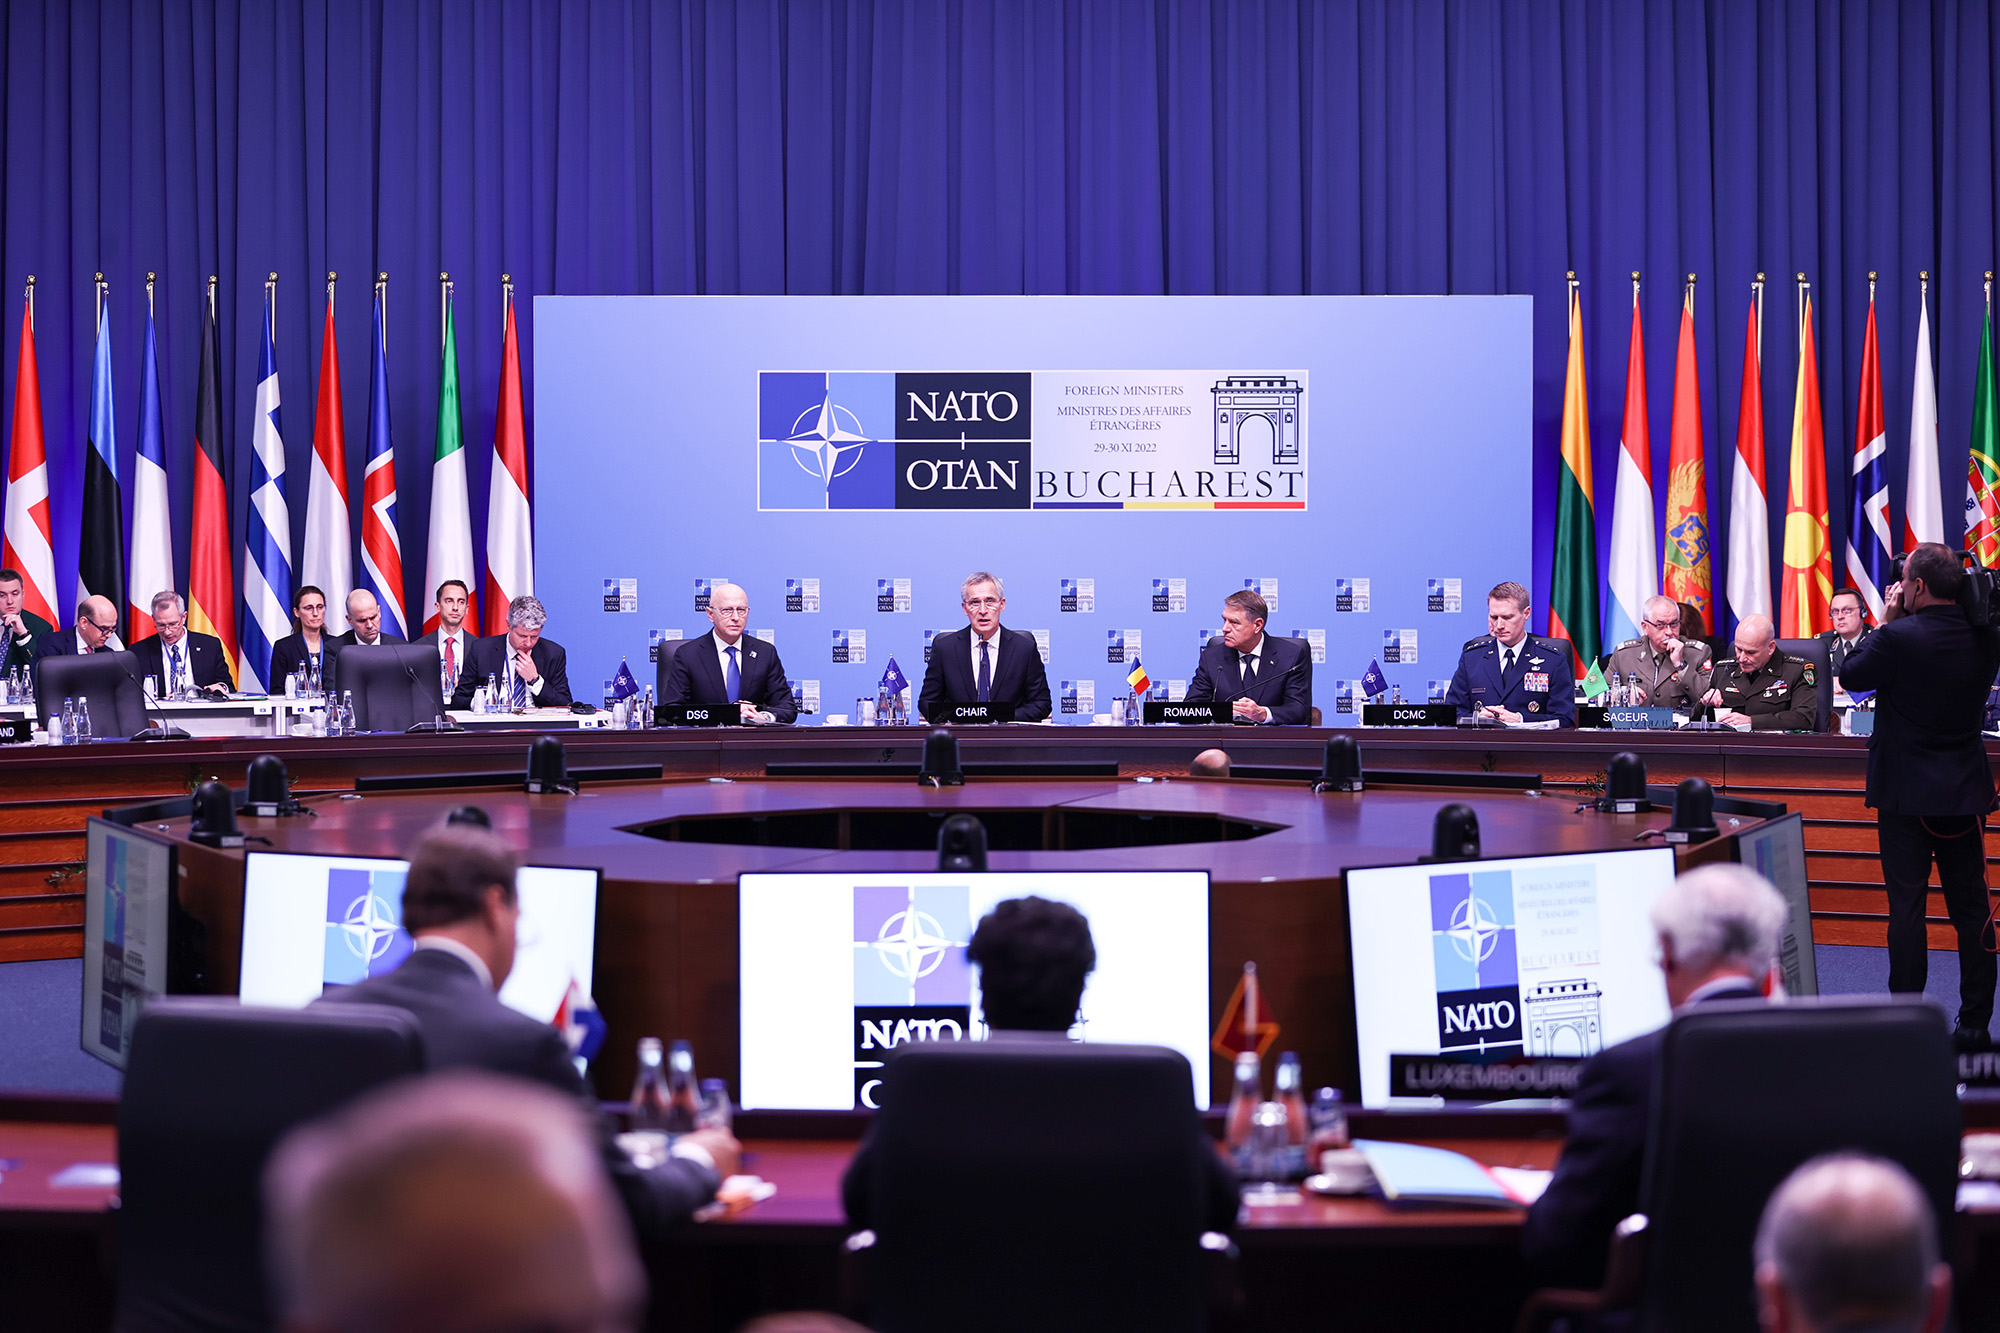 Ngoại trưởng các nước NATO nhóm họp hôm 29/11 (ảnh: CNN)